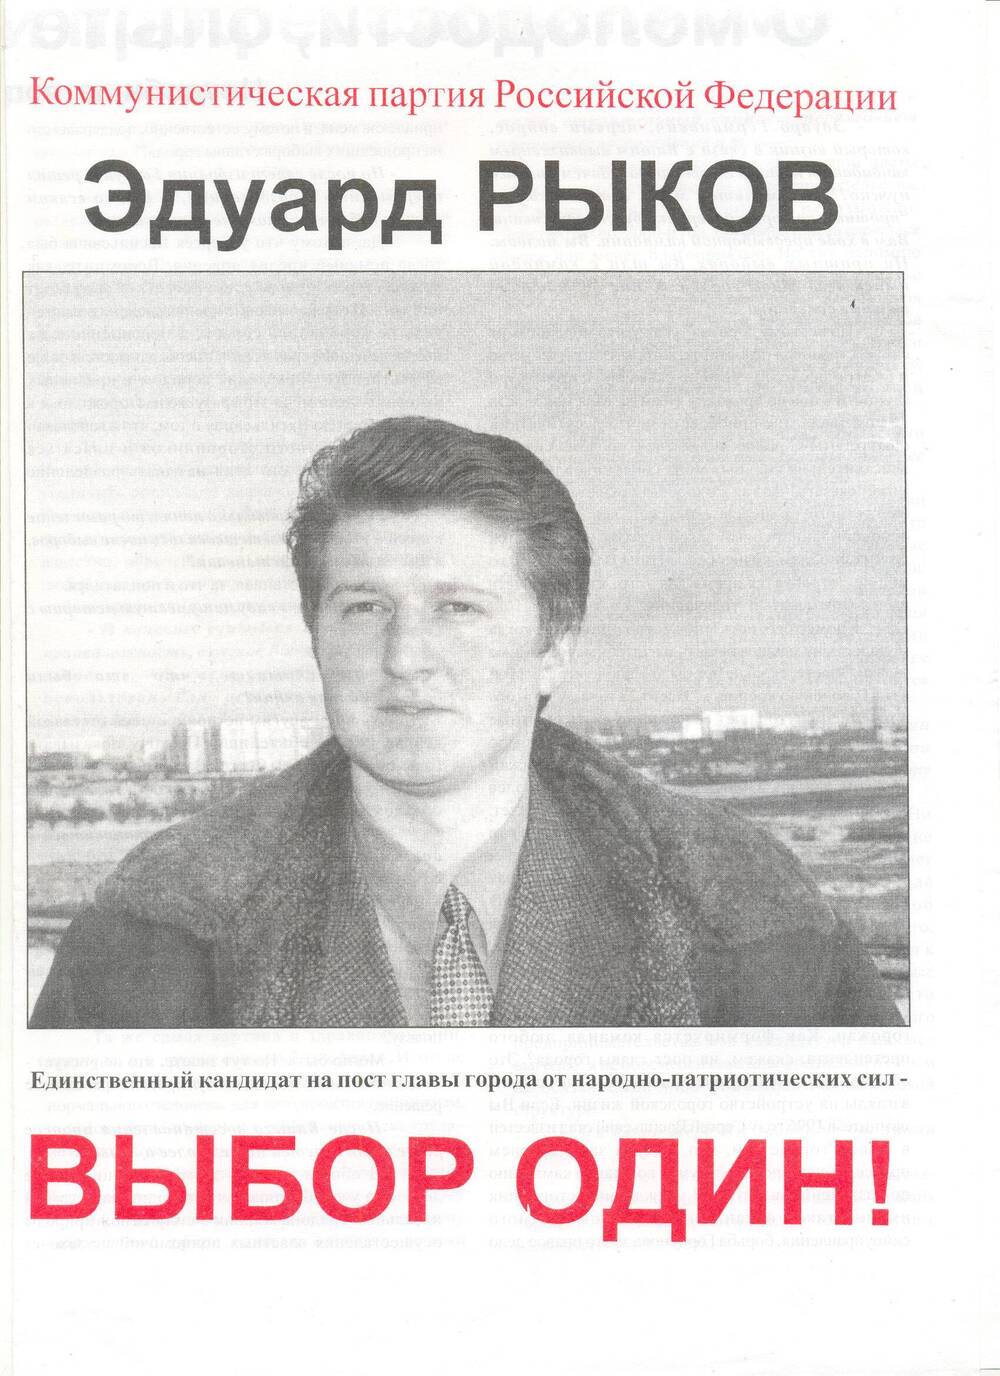 Агитационный лист. Единственный кандидат на пост главы города от народно-патриотических сил - Эдуард Рыков